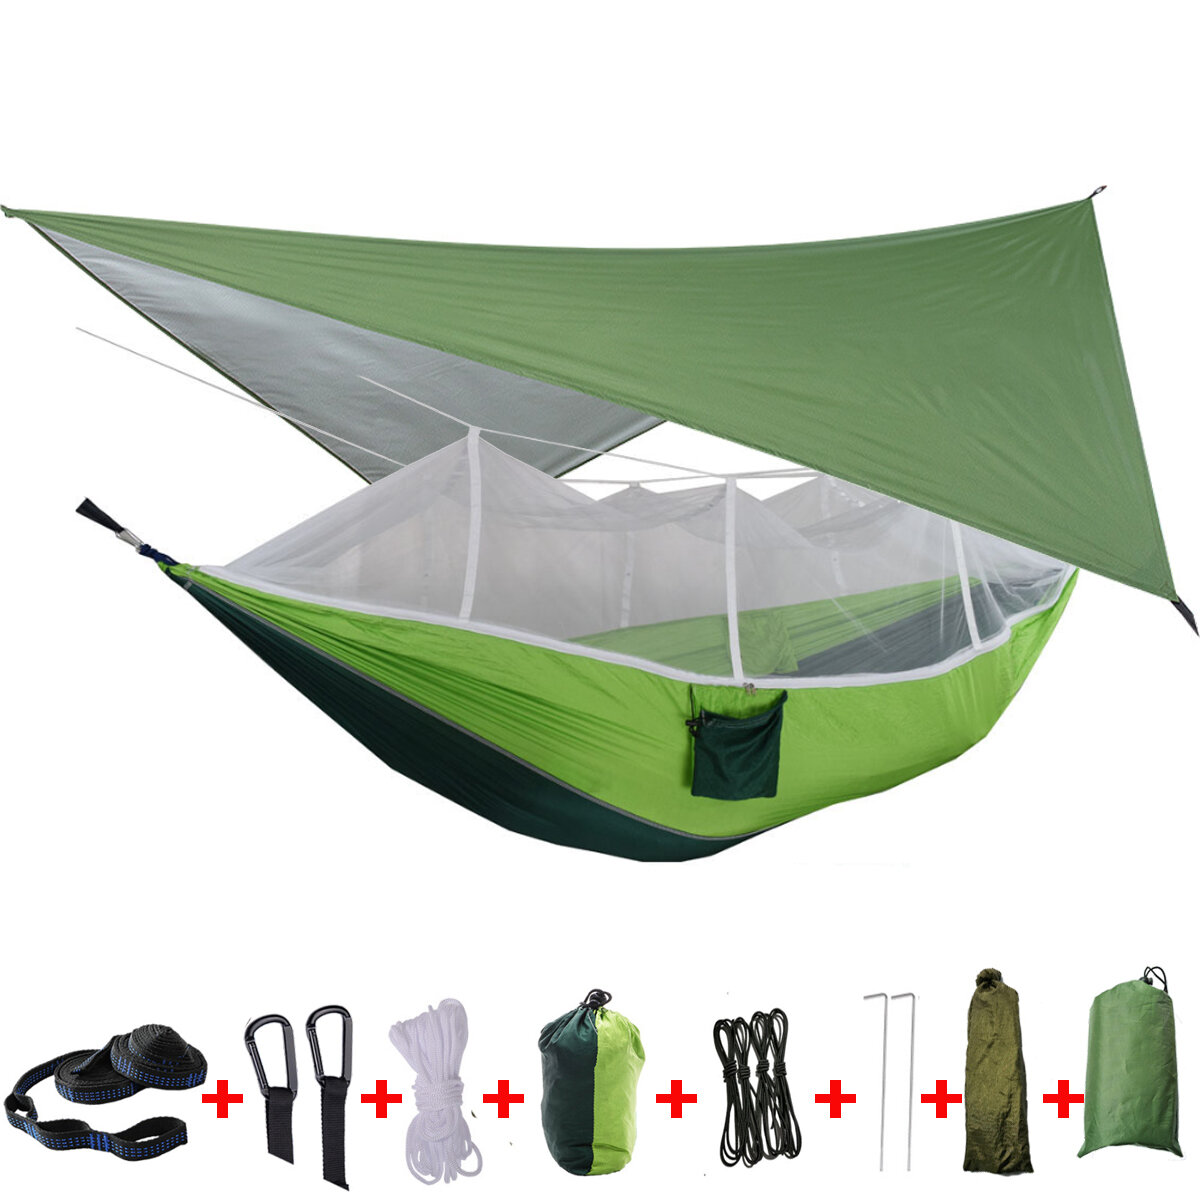 IPRee® 2 személyes kemping hintaágy sátor szúnyoghálóval, esővédő ponyvával és dupla függőágyas ággyal az outdoor utazáshoz